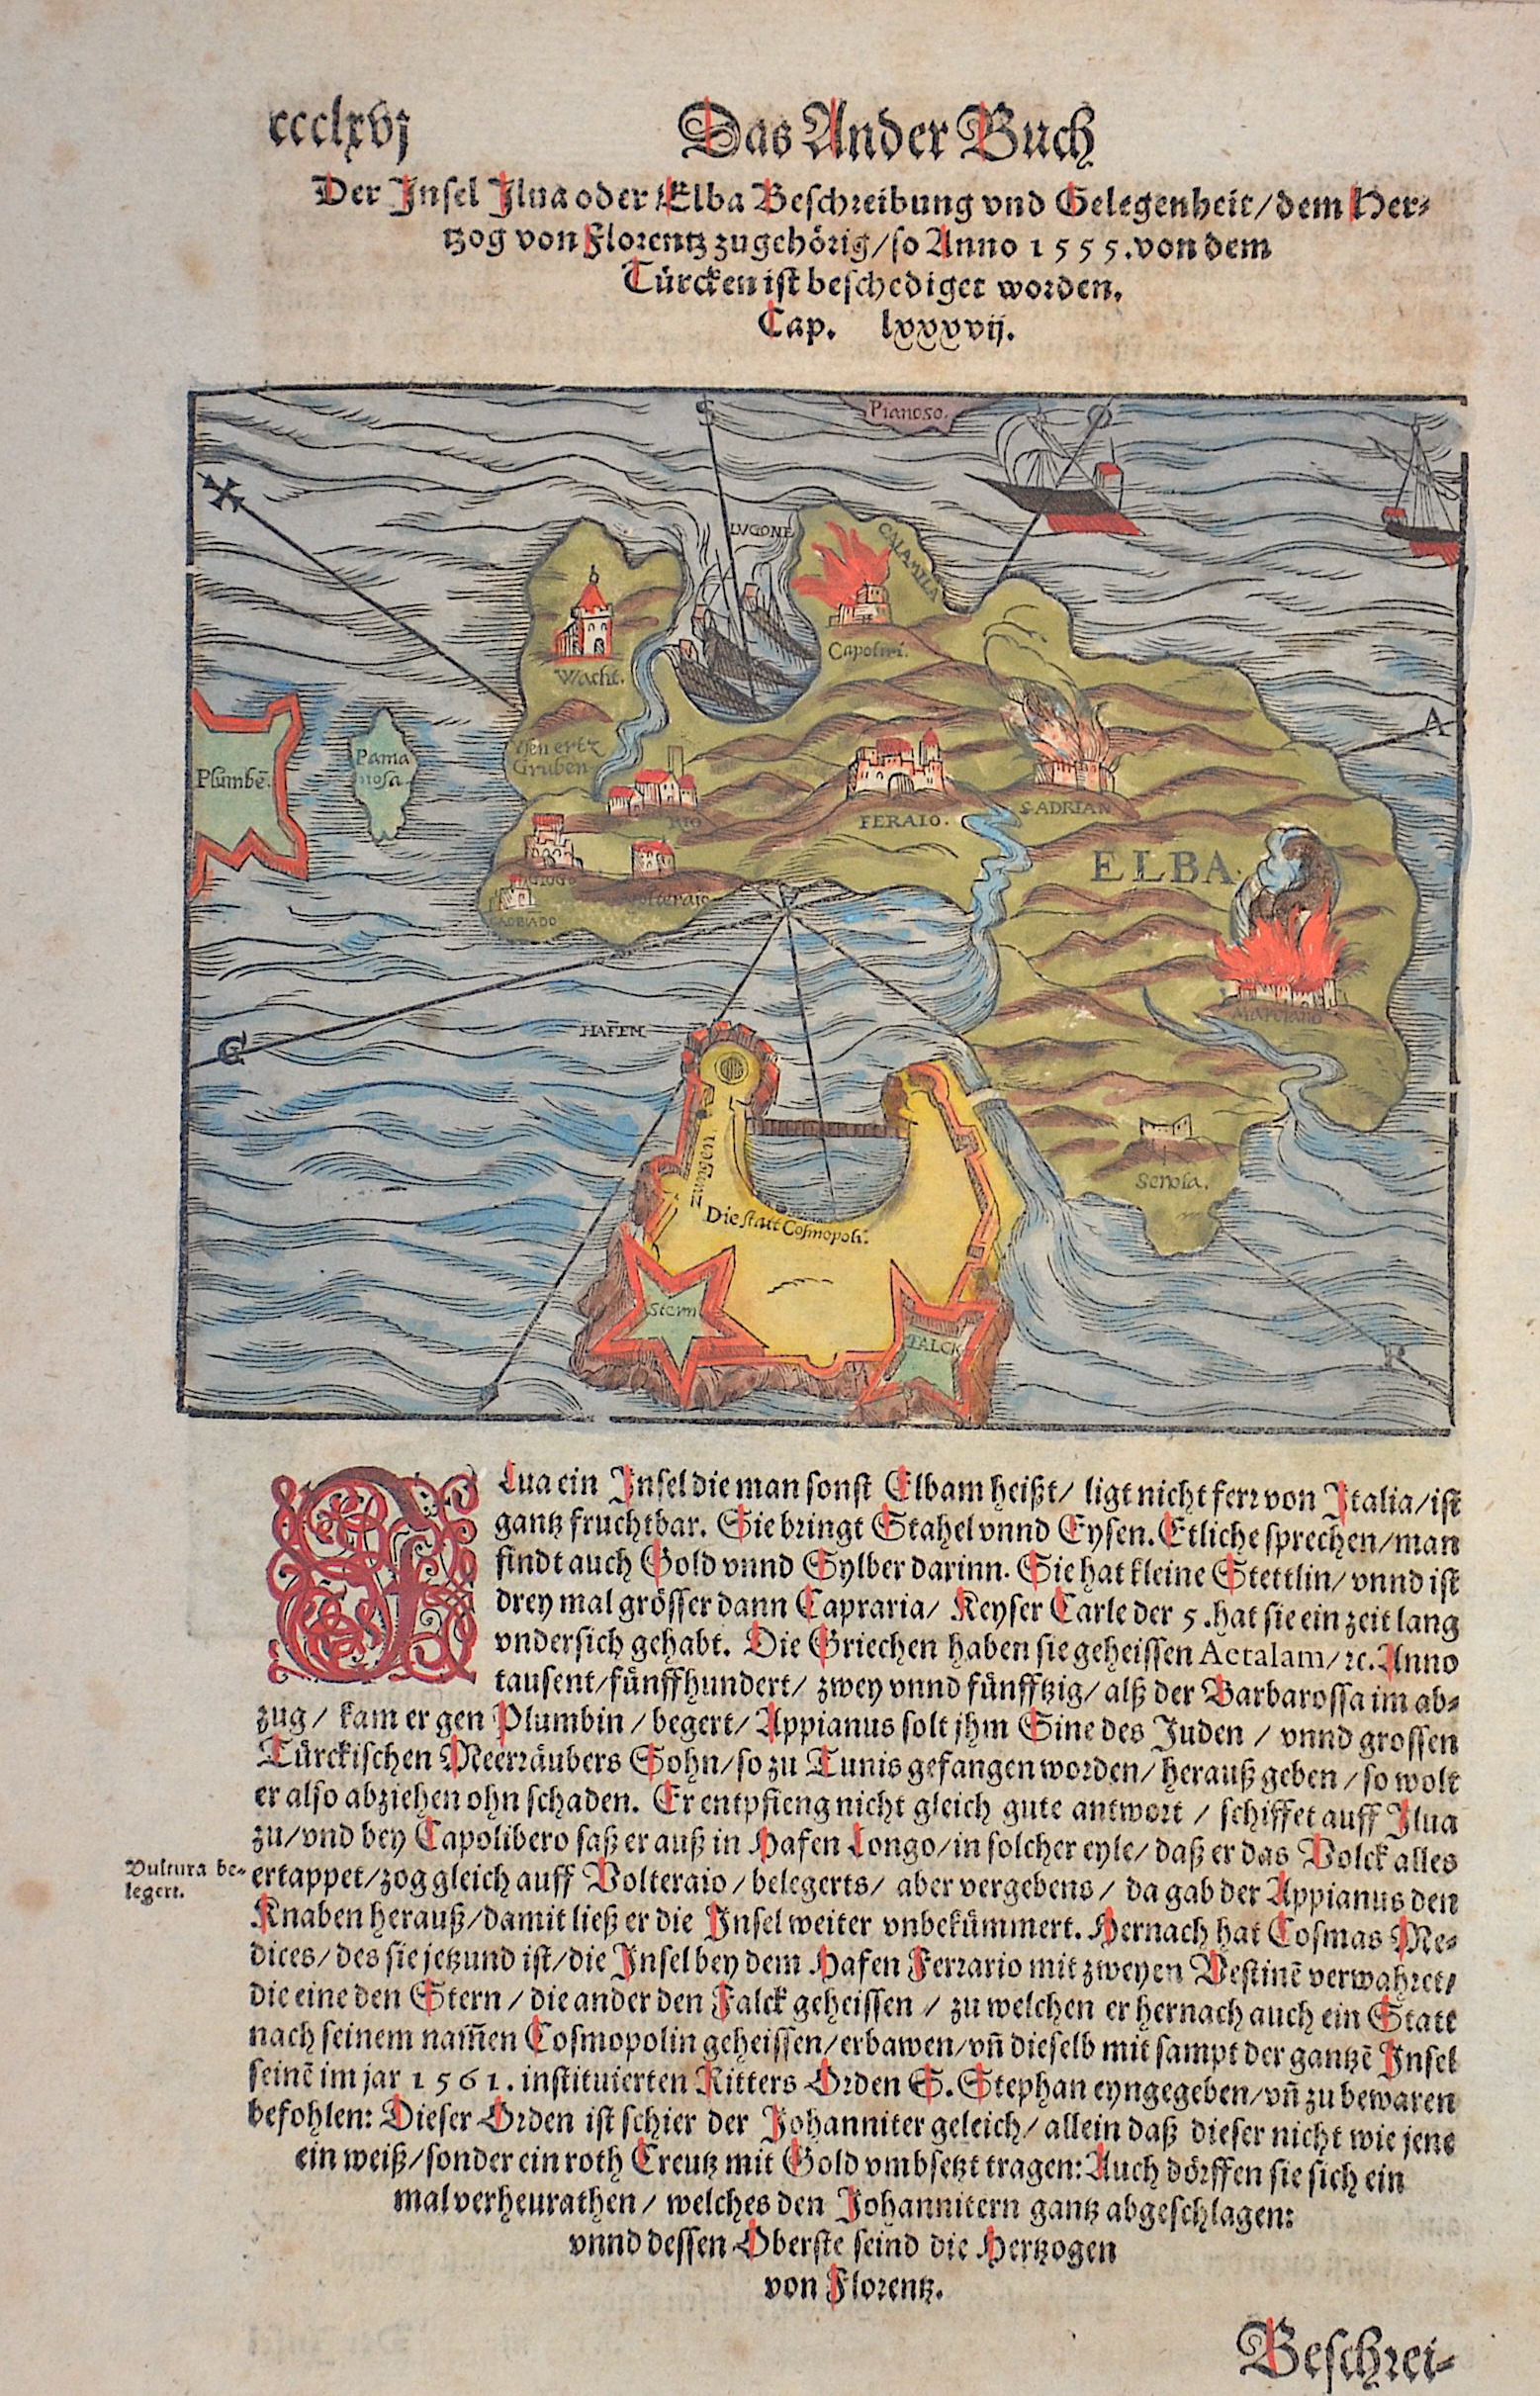 Münster Sebastian Das Ander Buch / Der Insel Ilva oder Elba Beschreibung und Gelegenheit dem Herzog von Florentz z gehörig so Anno 1555 von dem Türcken ist beschediget